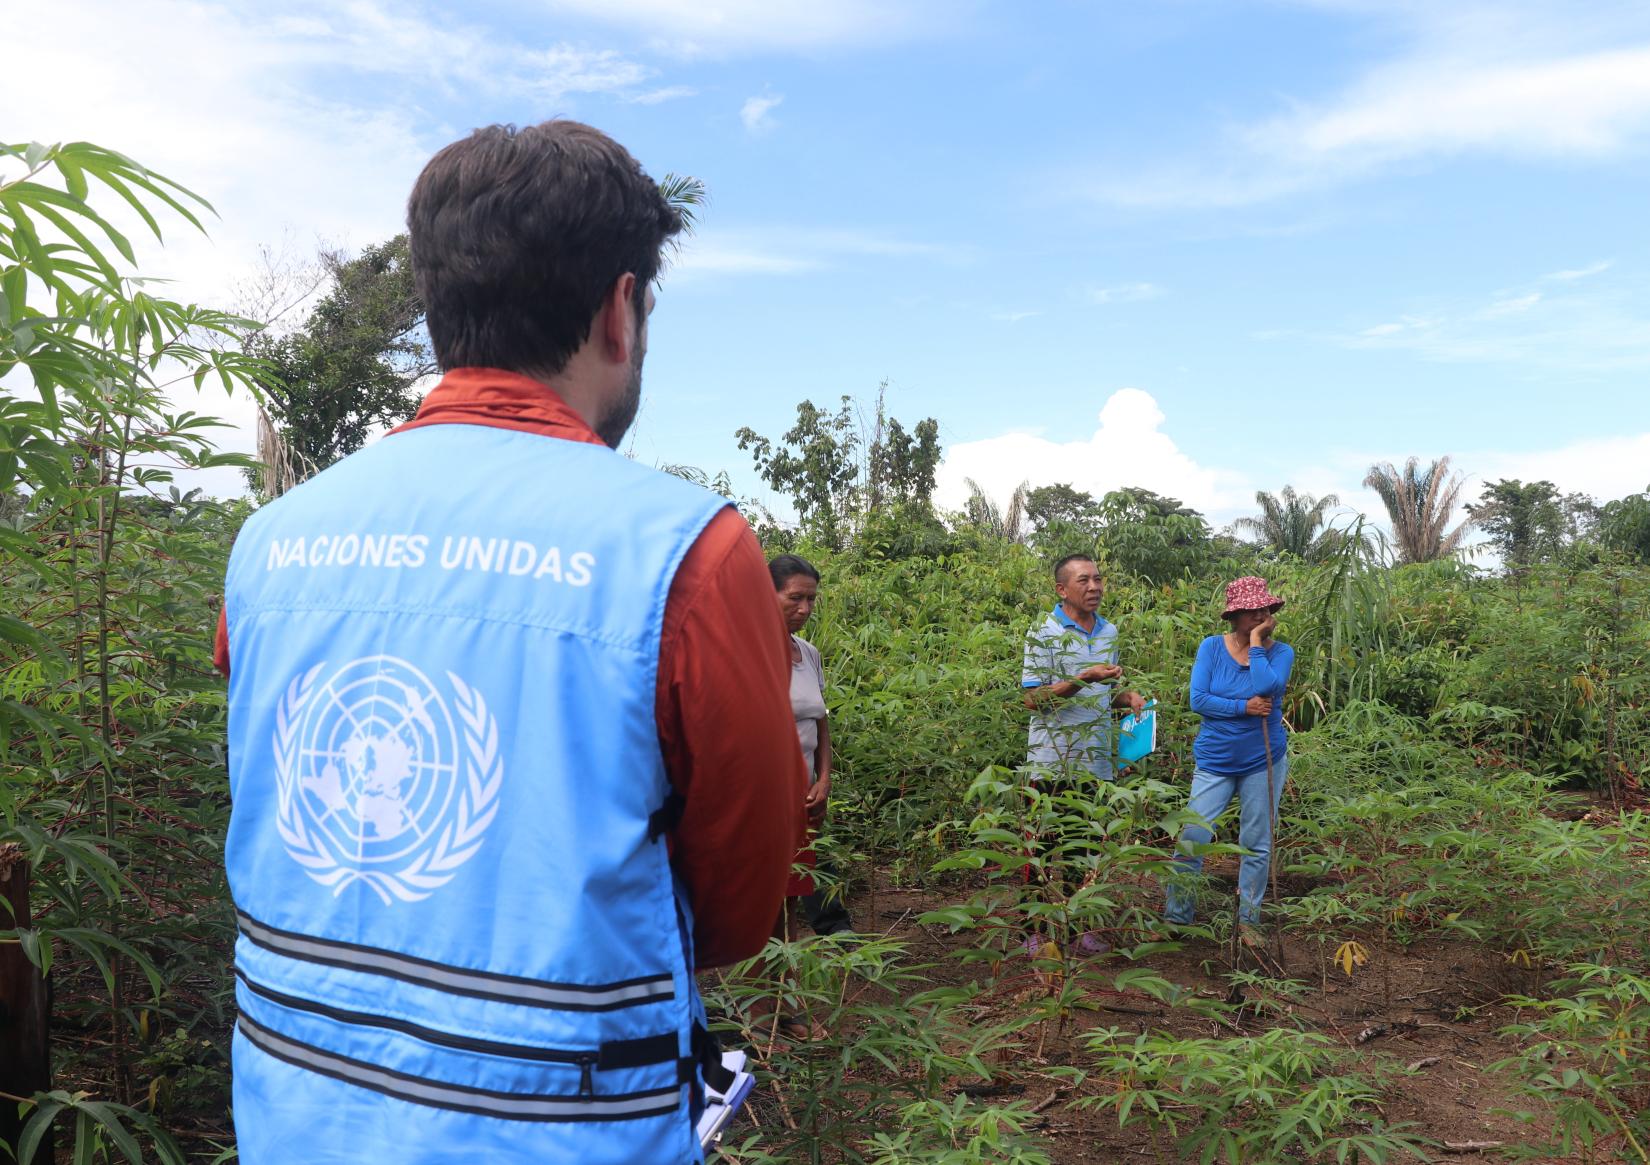 Personal de OCHA con un chaleco de Naciones Unidas observa a una familia de campesinos.